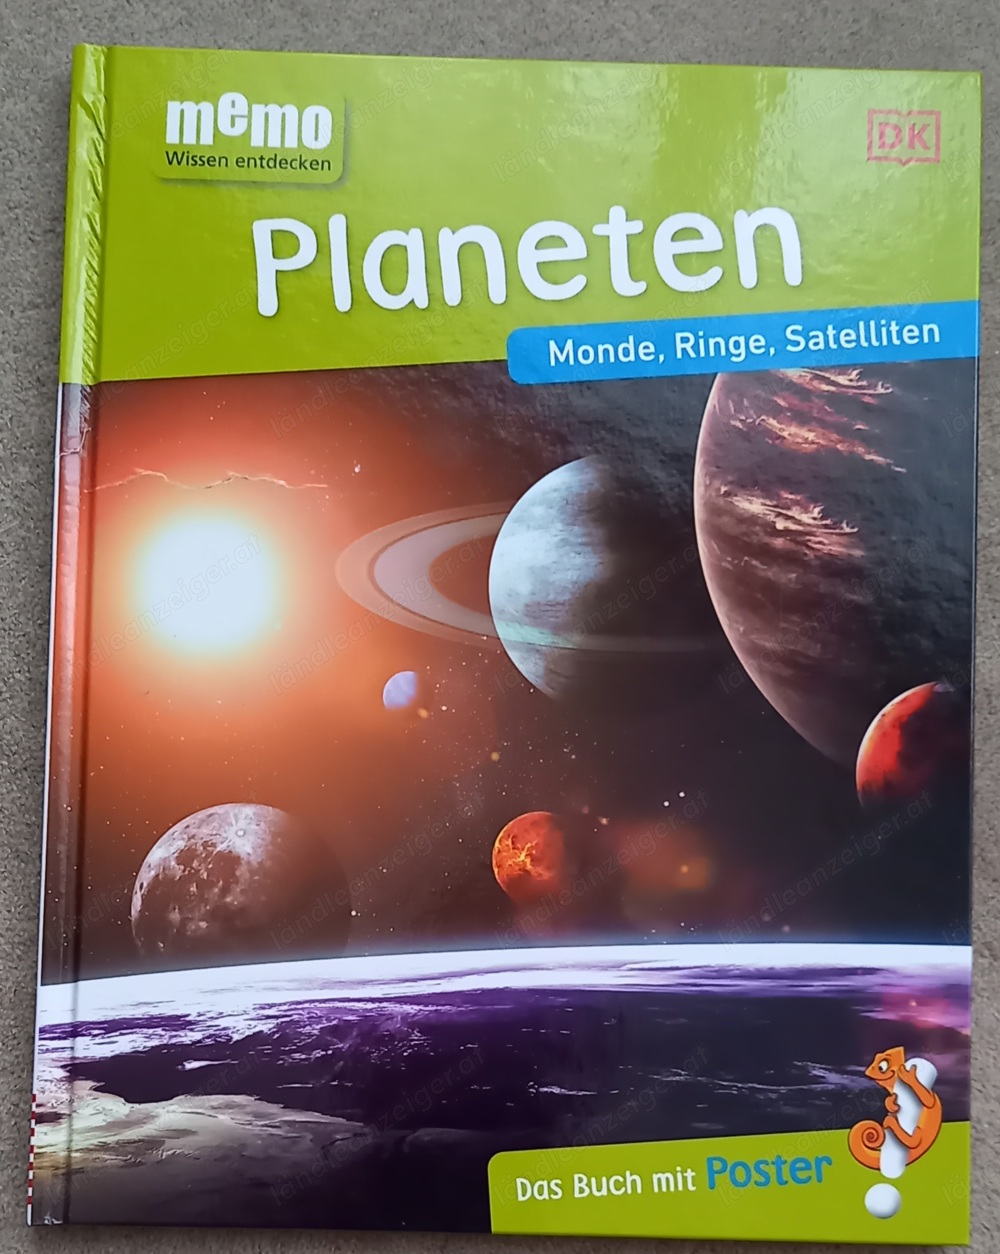 Planetenbuch von Memo DK ohne Poster